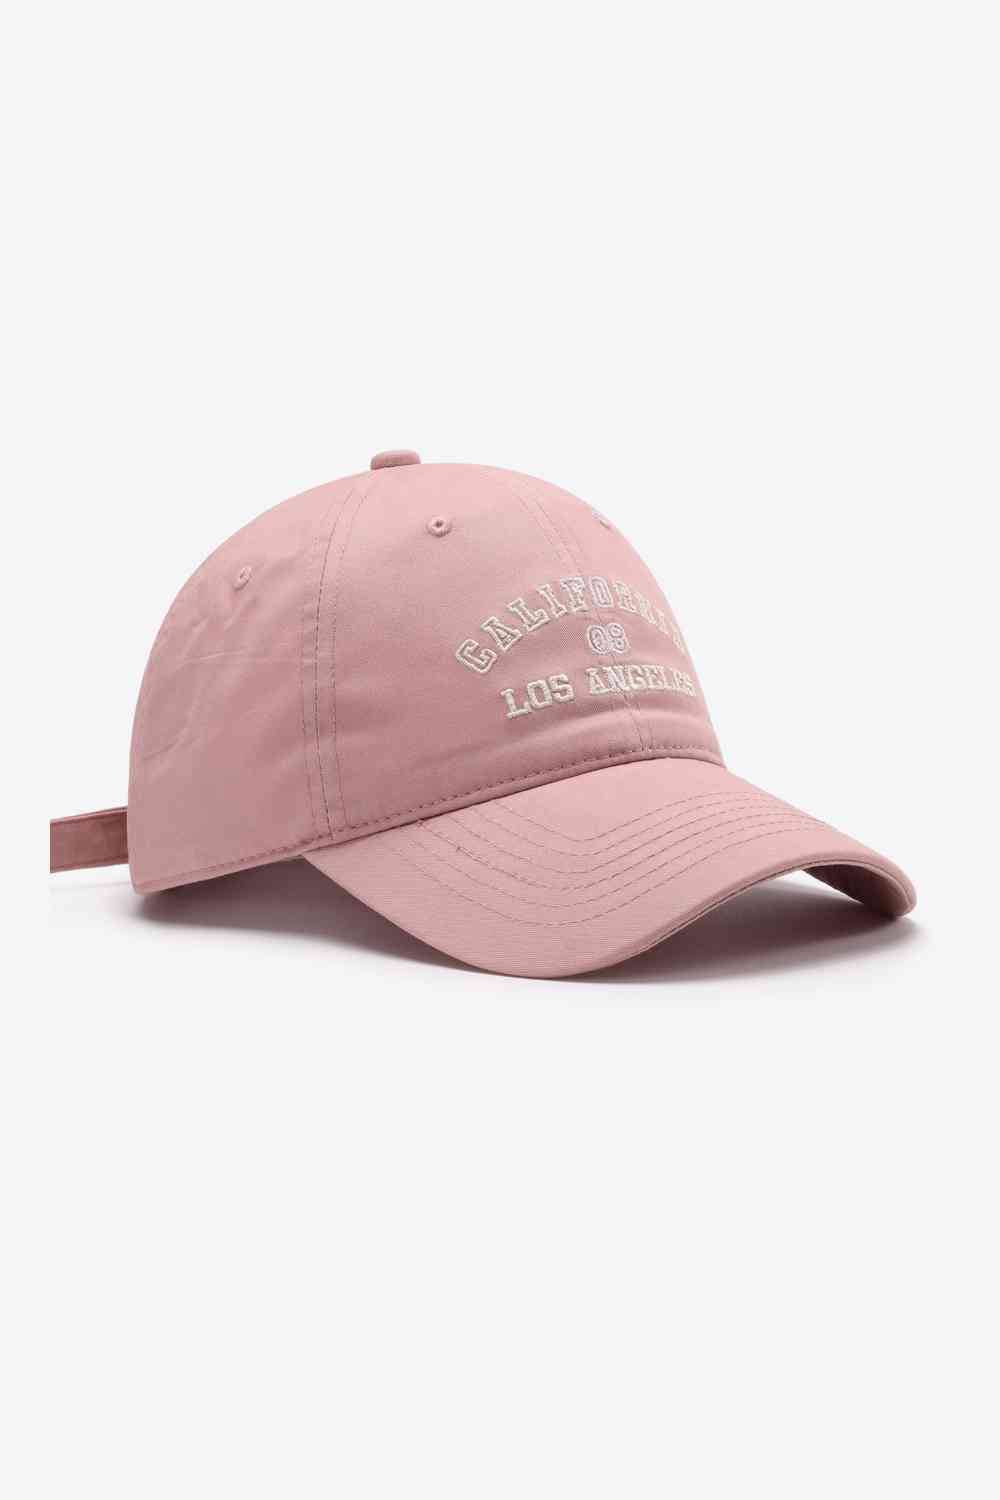 Blush Pink / One Size